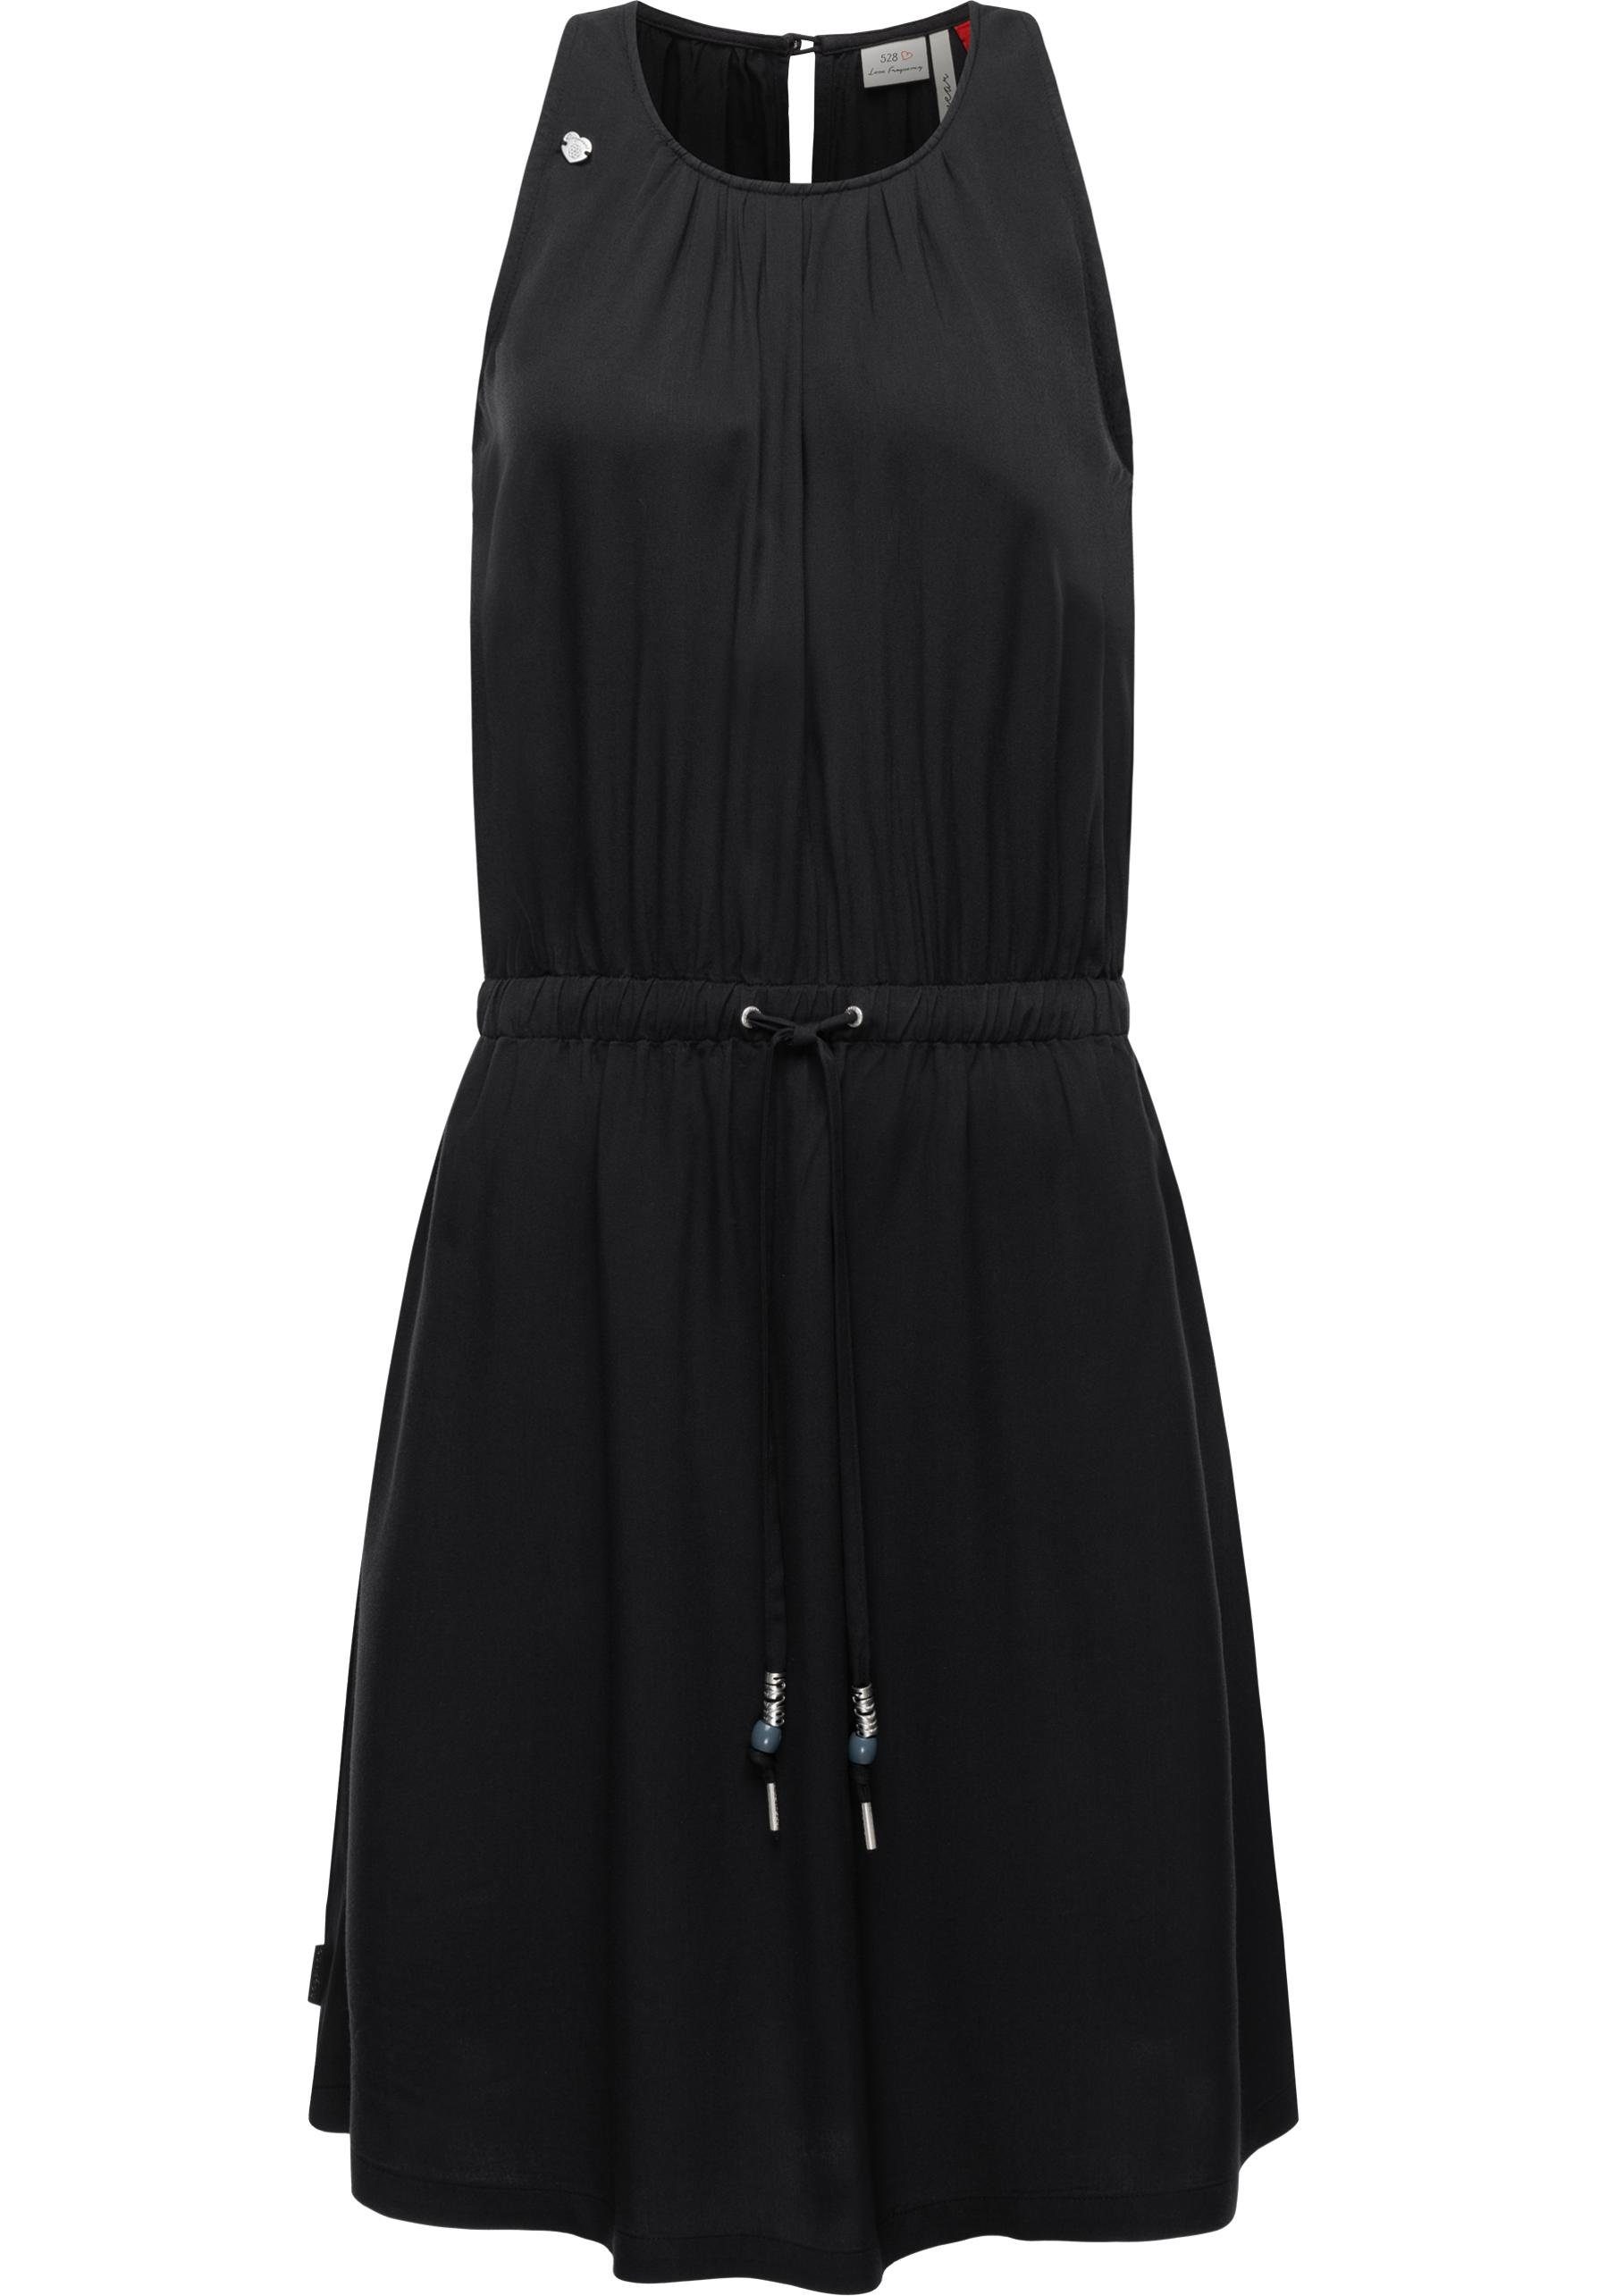 Ragwear Blusenkleid Sanai stylisches Sommerkleid mit verspielten Details